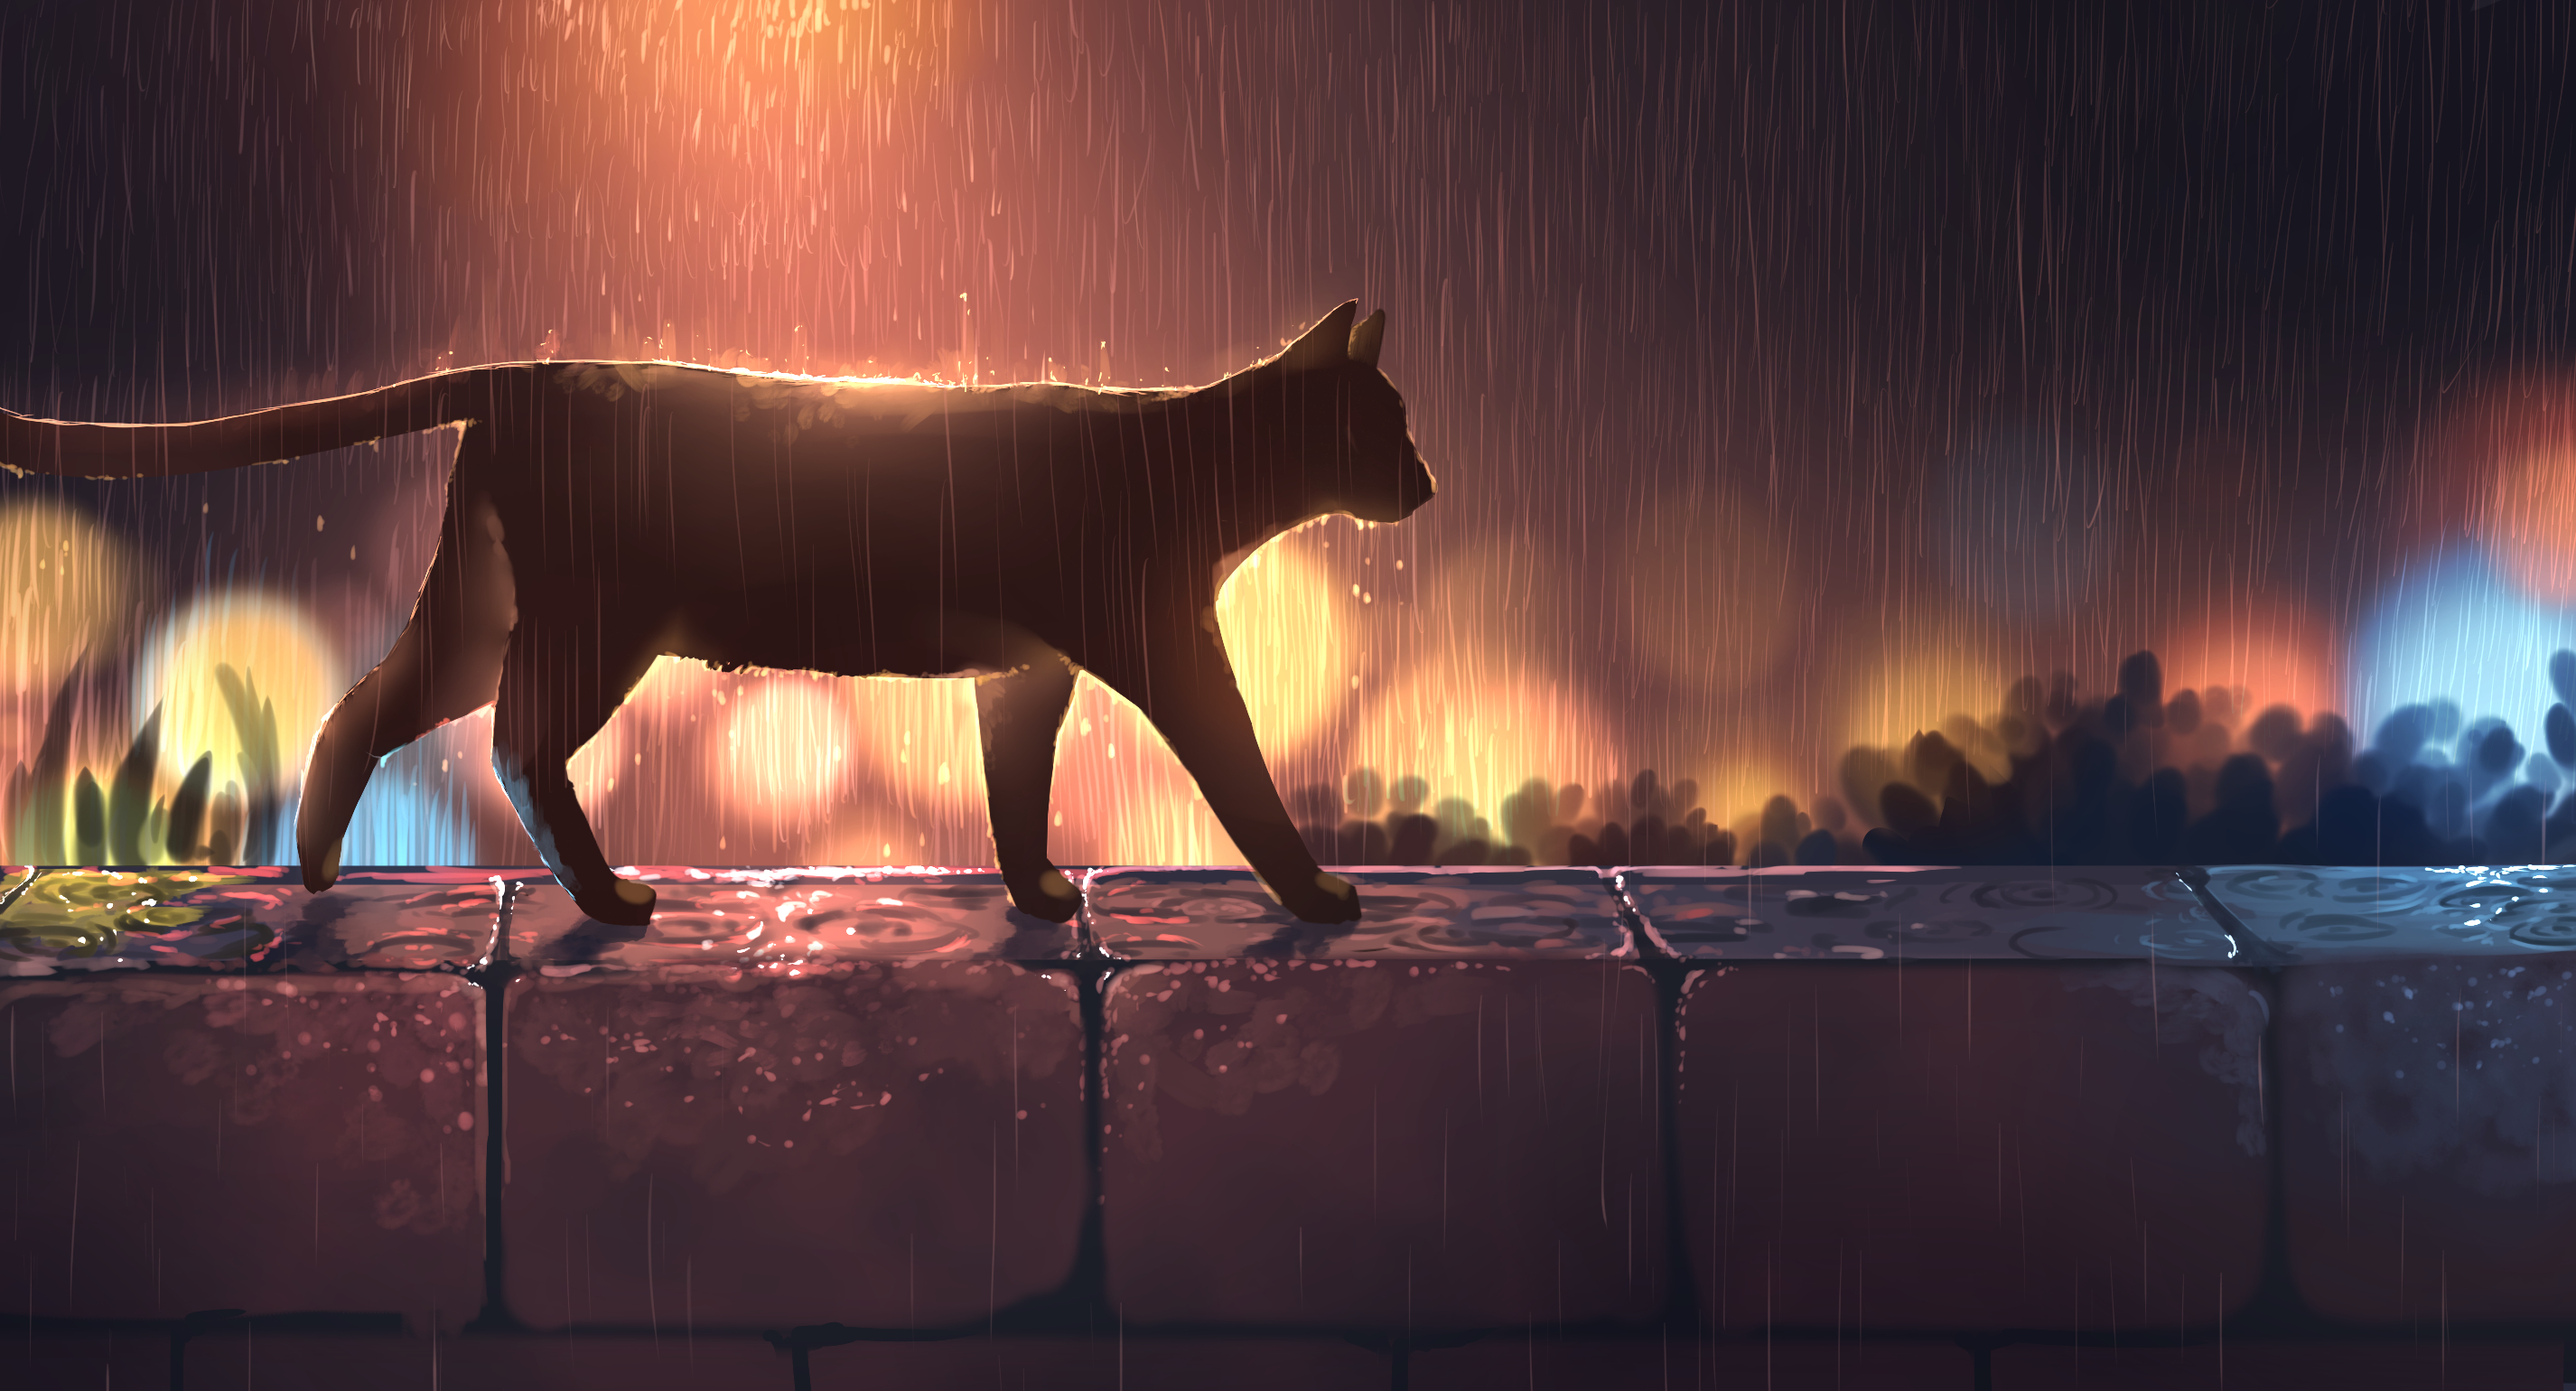 Digital Art Artwork Illustration Night Lights Rain Cats Night View Wall Water Drops Water 2852x1540